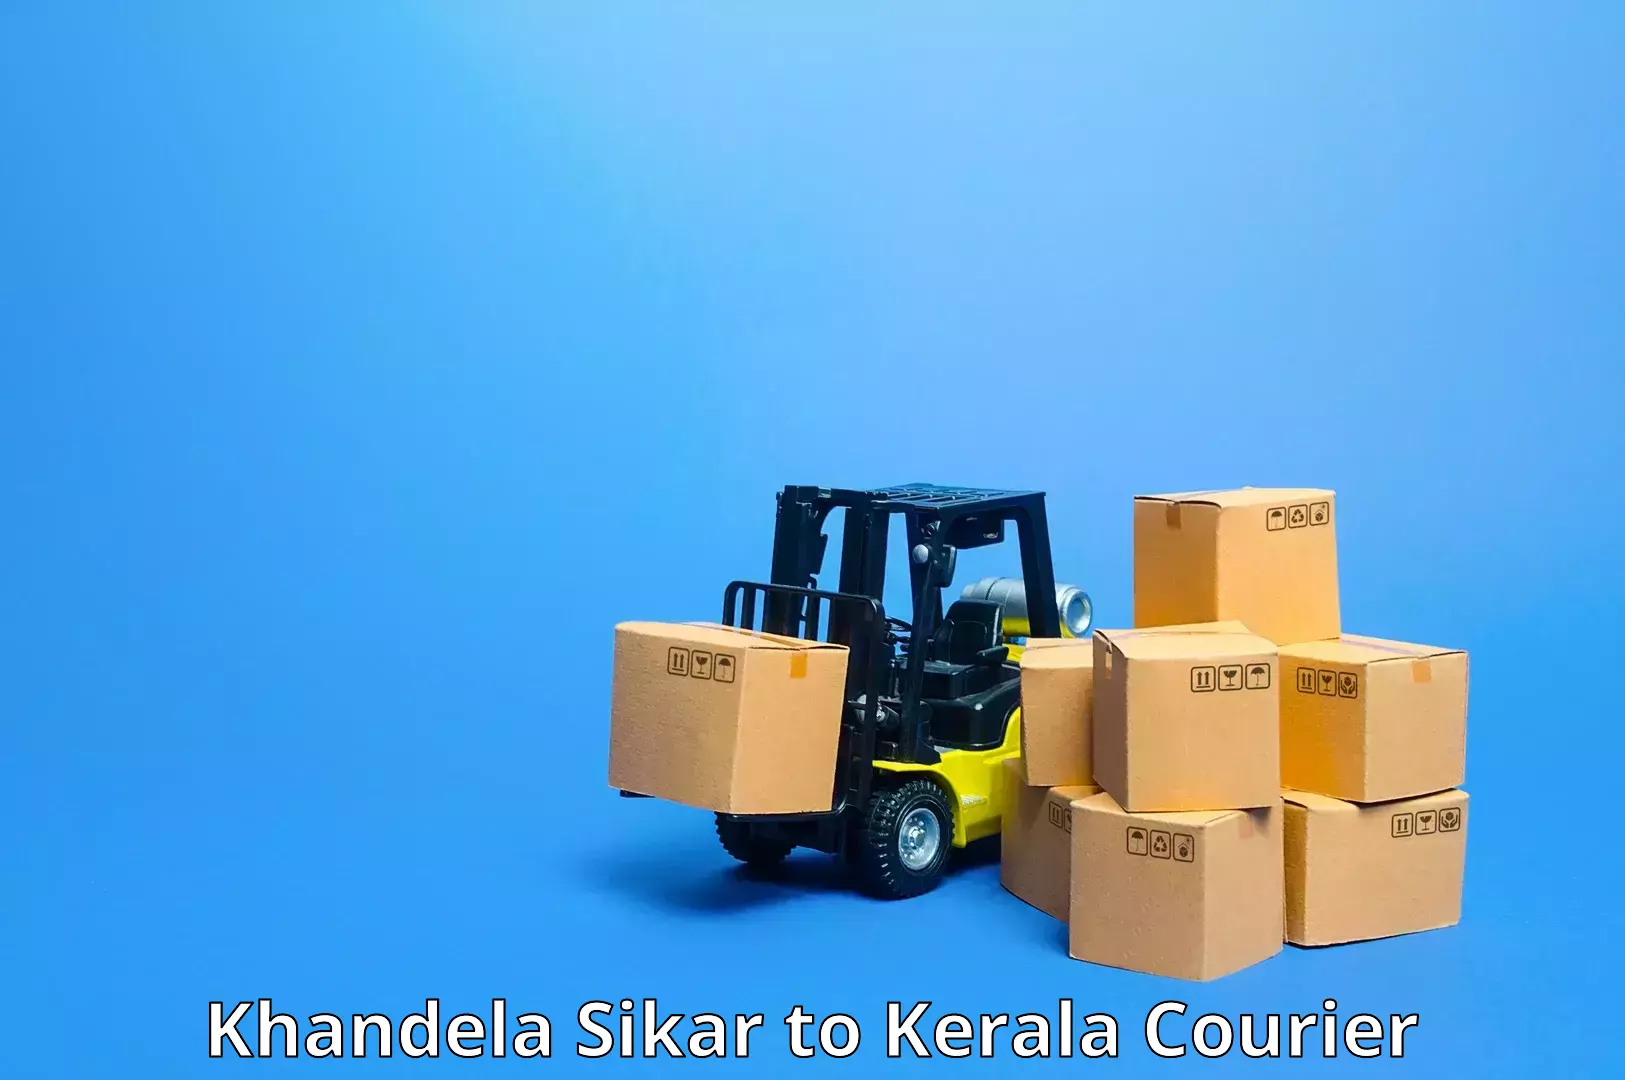 User-friendly courier app Khandela Sikar to Kakkur